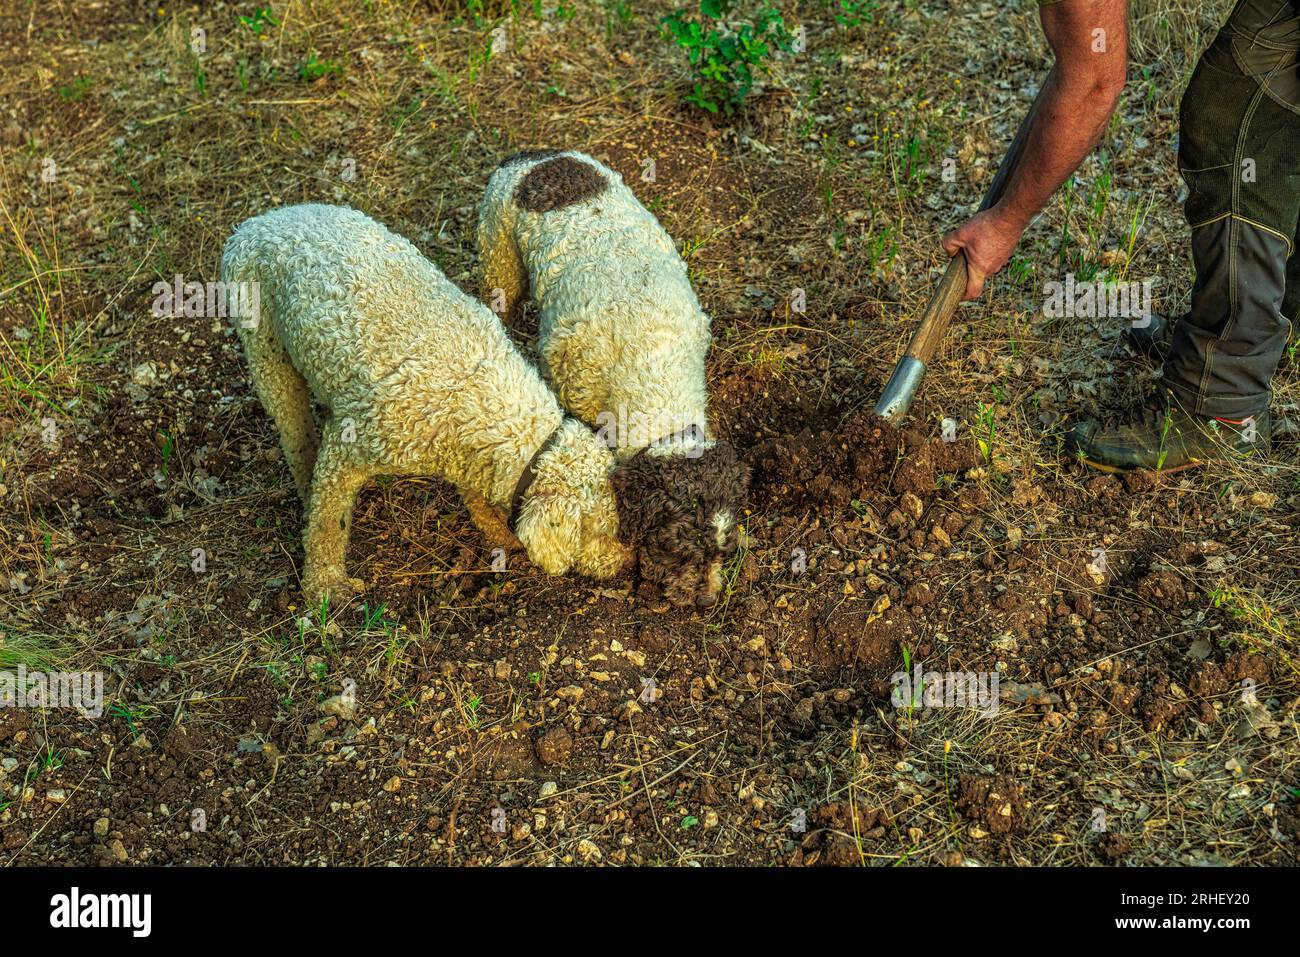 2 cani di Lagotto Romagnolo, cane del tartufo, scavare alla ricerca del tartufo. L'uomo aiuta i cani a scavare il terreno troppo duramente. Abruzzo, Italia, Europa Foto Stock